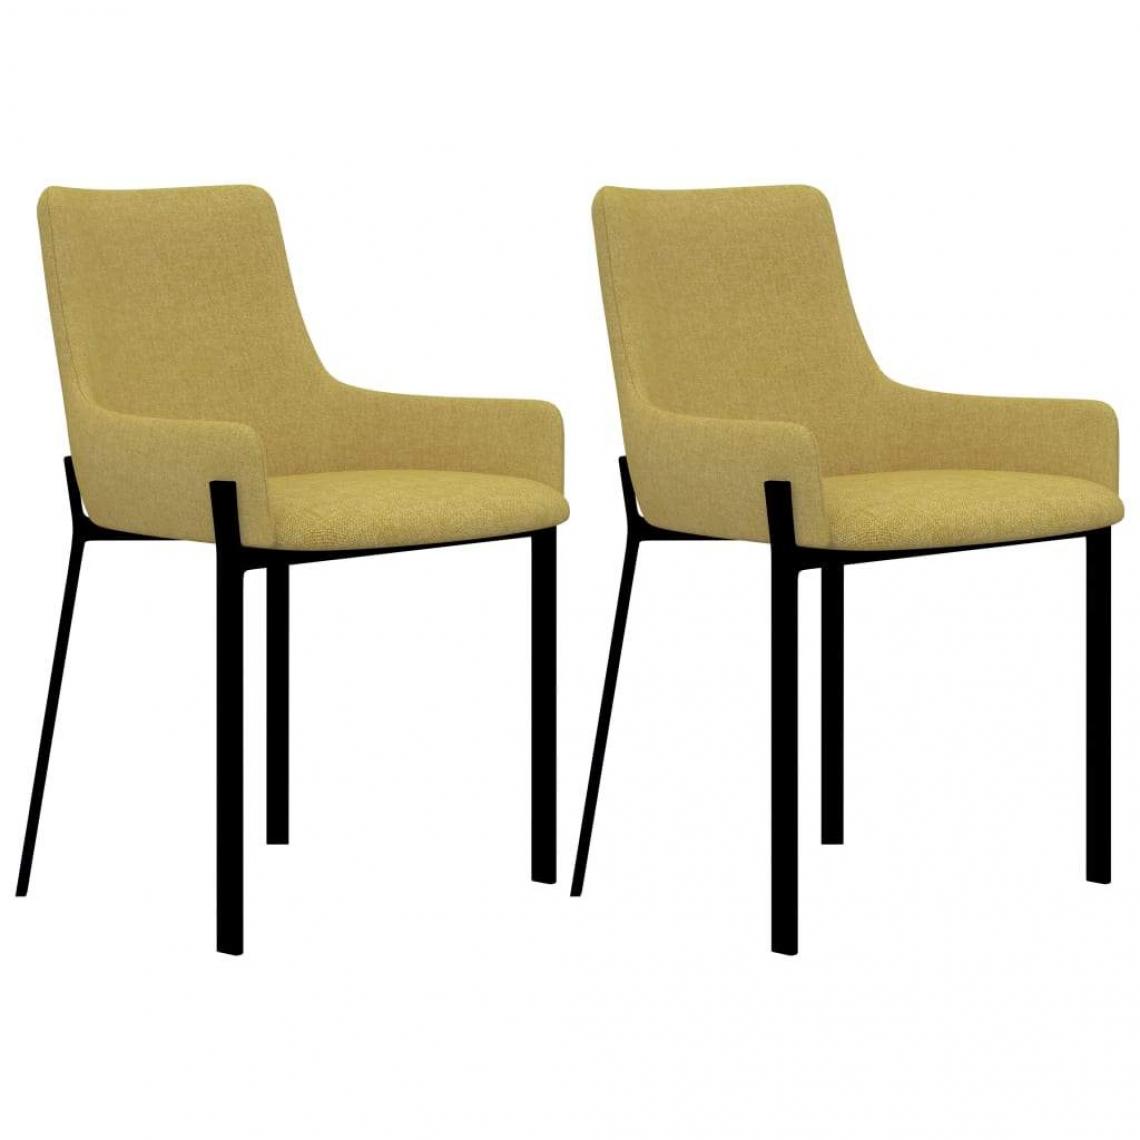 Decoshop26 - Lot de 2 chaises de salle à manger cuisine design moderne tissu jaune CDS020646 - Chaises